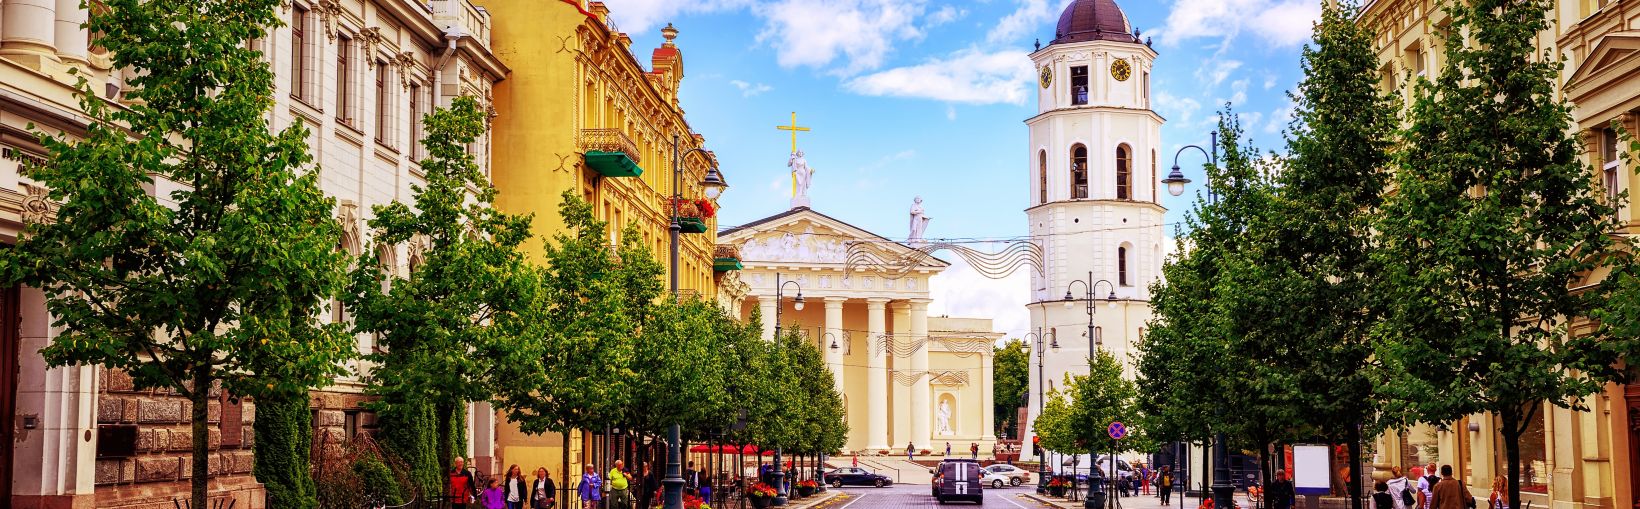 Populiari apsipirkimo ir pietų vieta Katedros aikštėje, matoma iš Gedimino prospekto – pagrindinės Vilniaus gatvės (Lietuva).